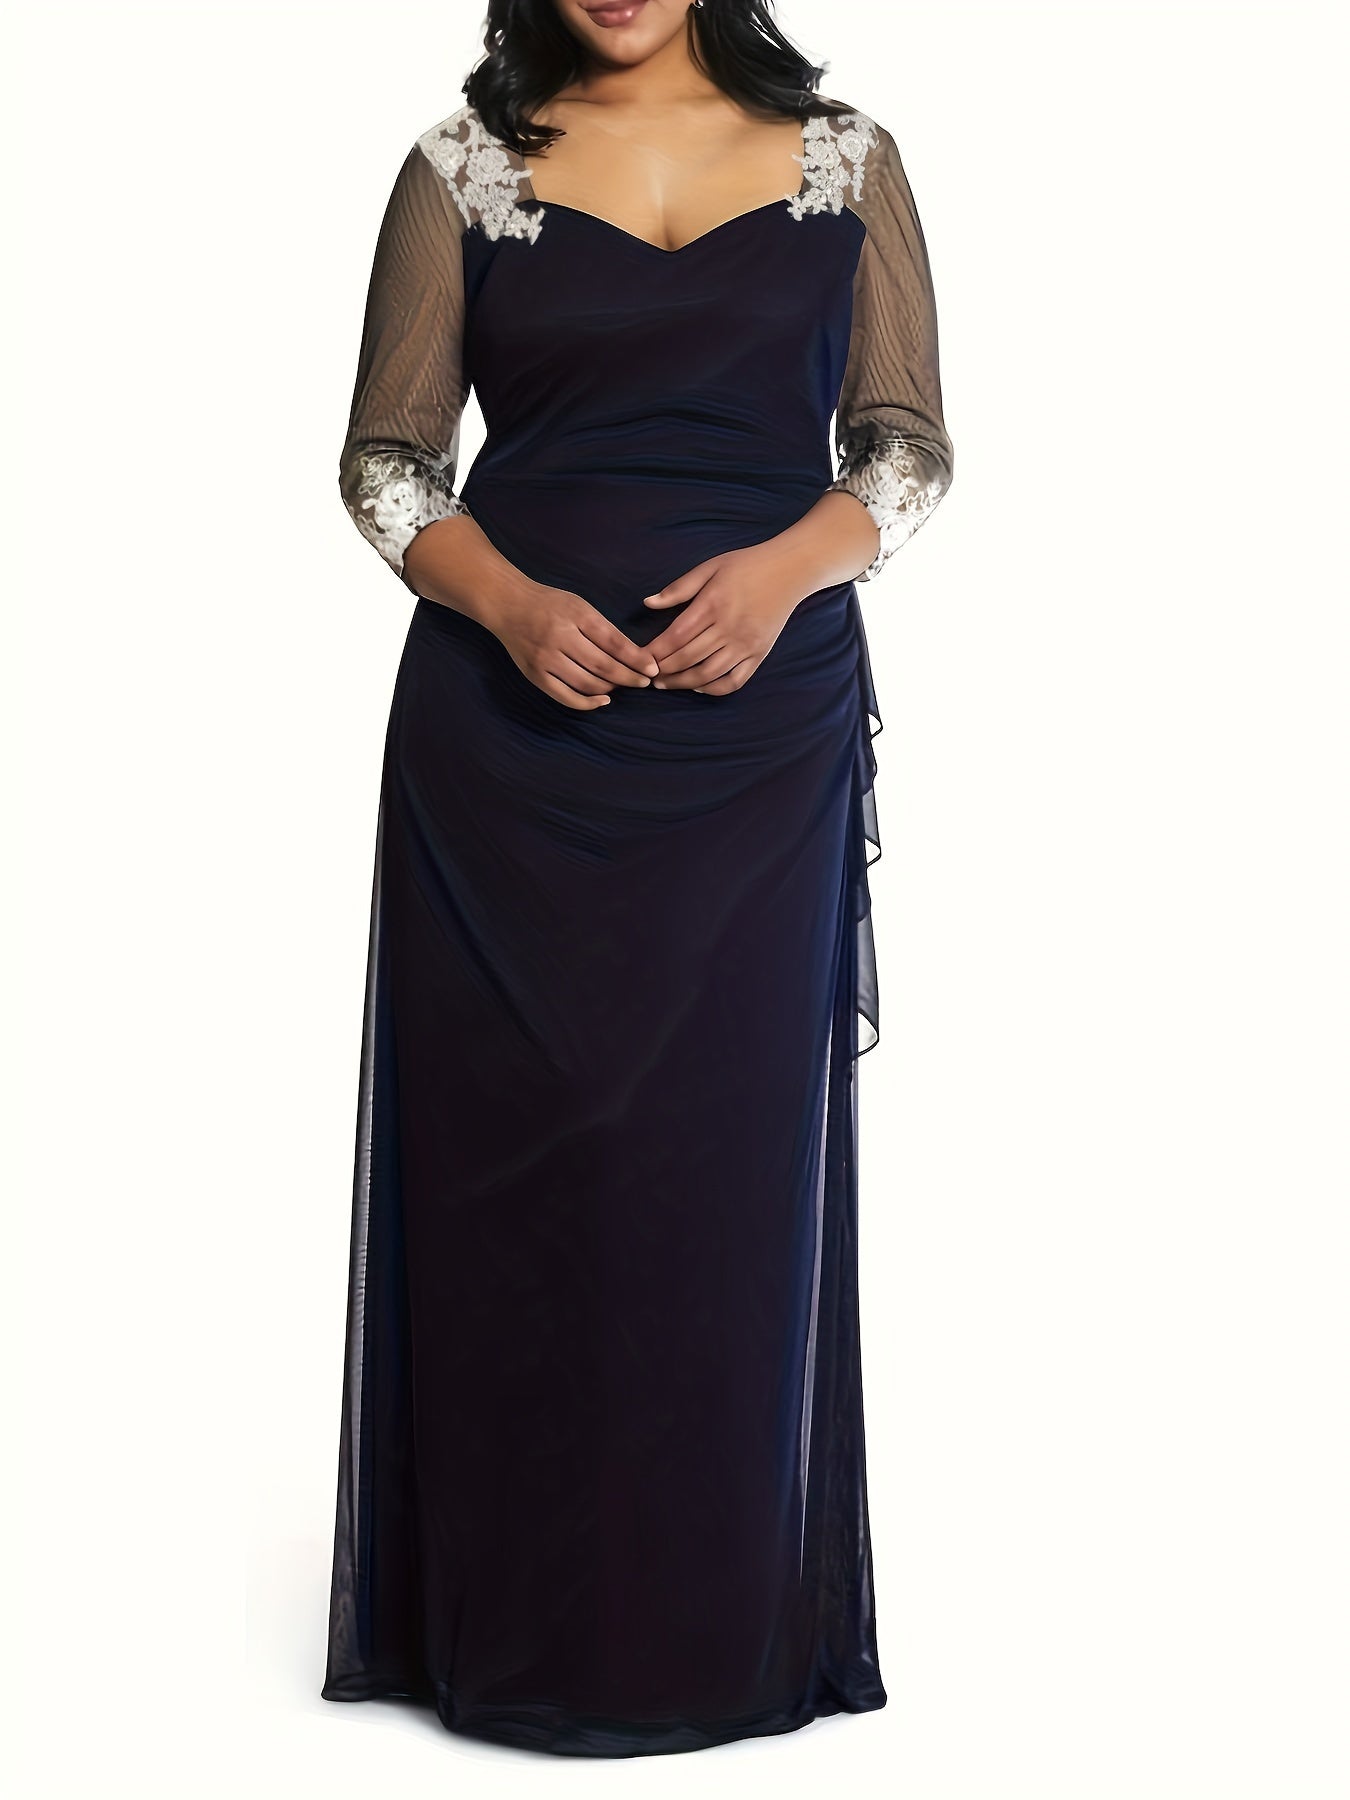 Antmvs Plus Size Elegant Wedding Guest Dress, Women's Plus Contrast Guipure Lace Sweetheart Neck Maxi Evening Party Dress